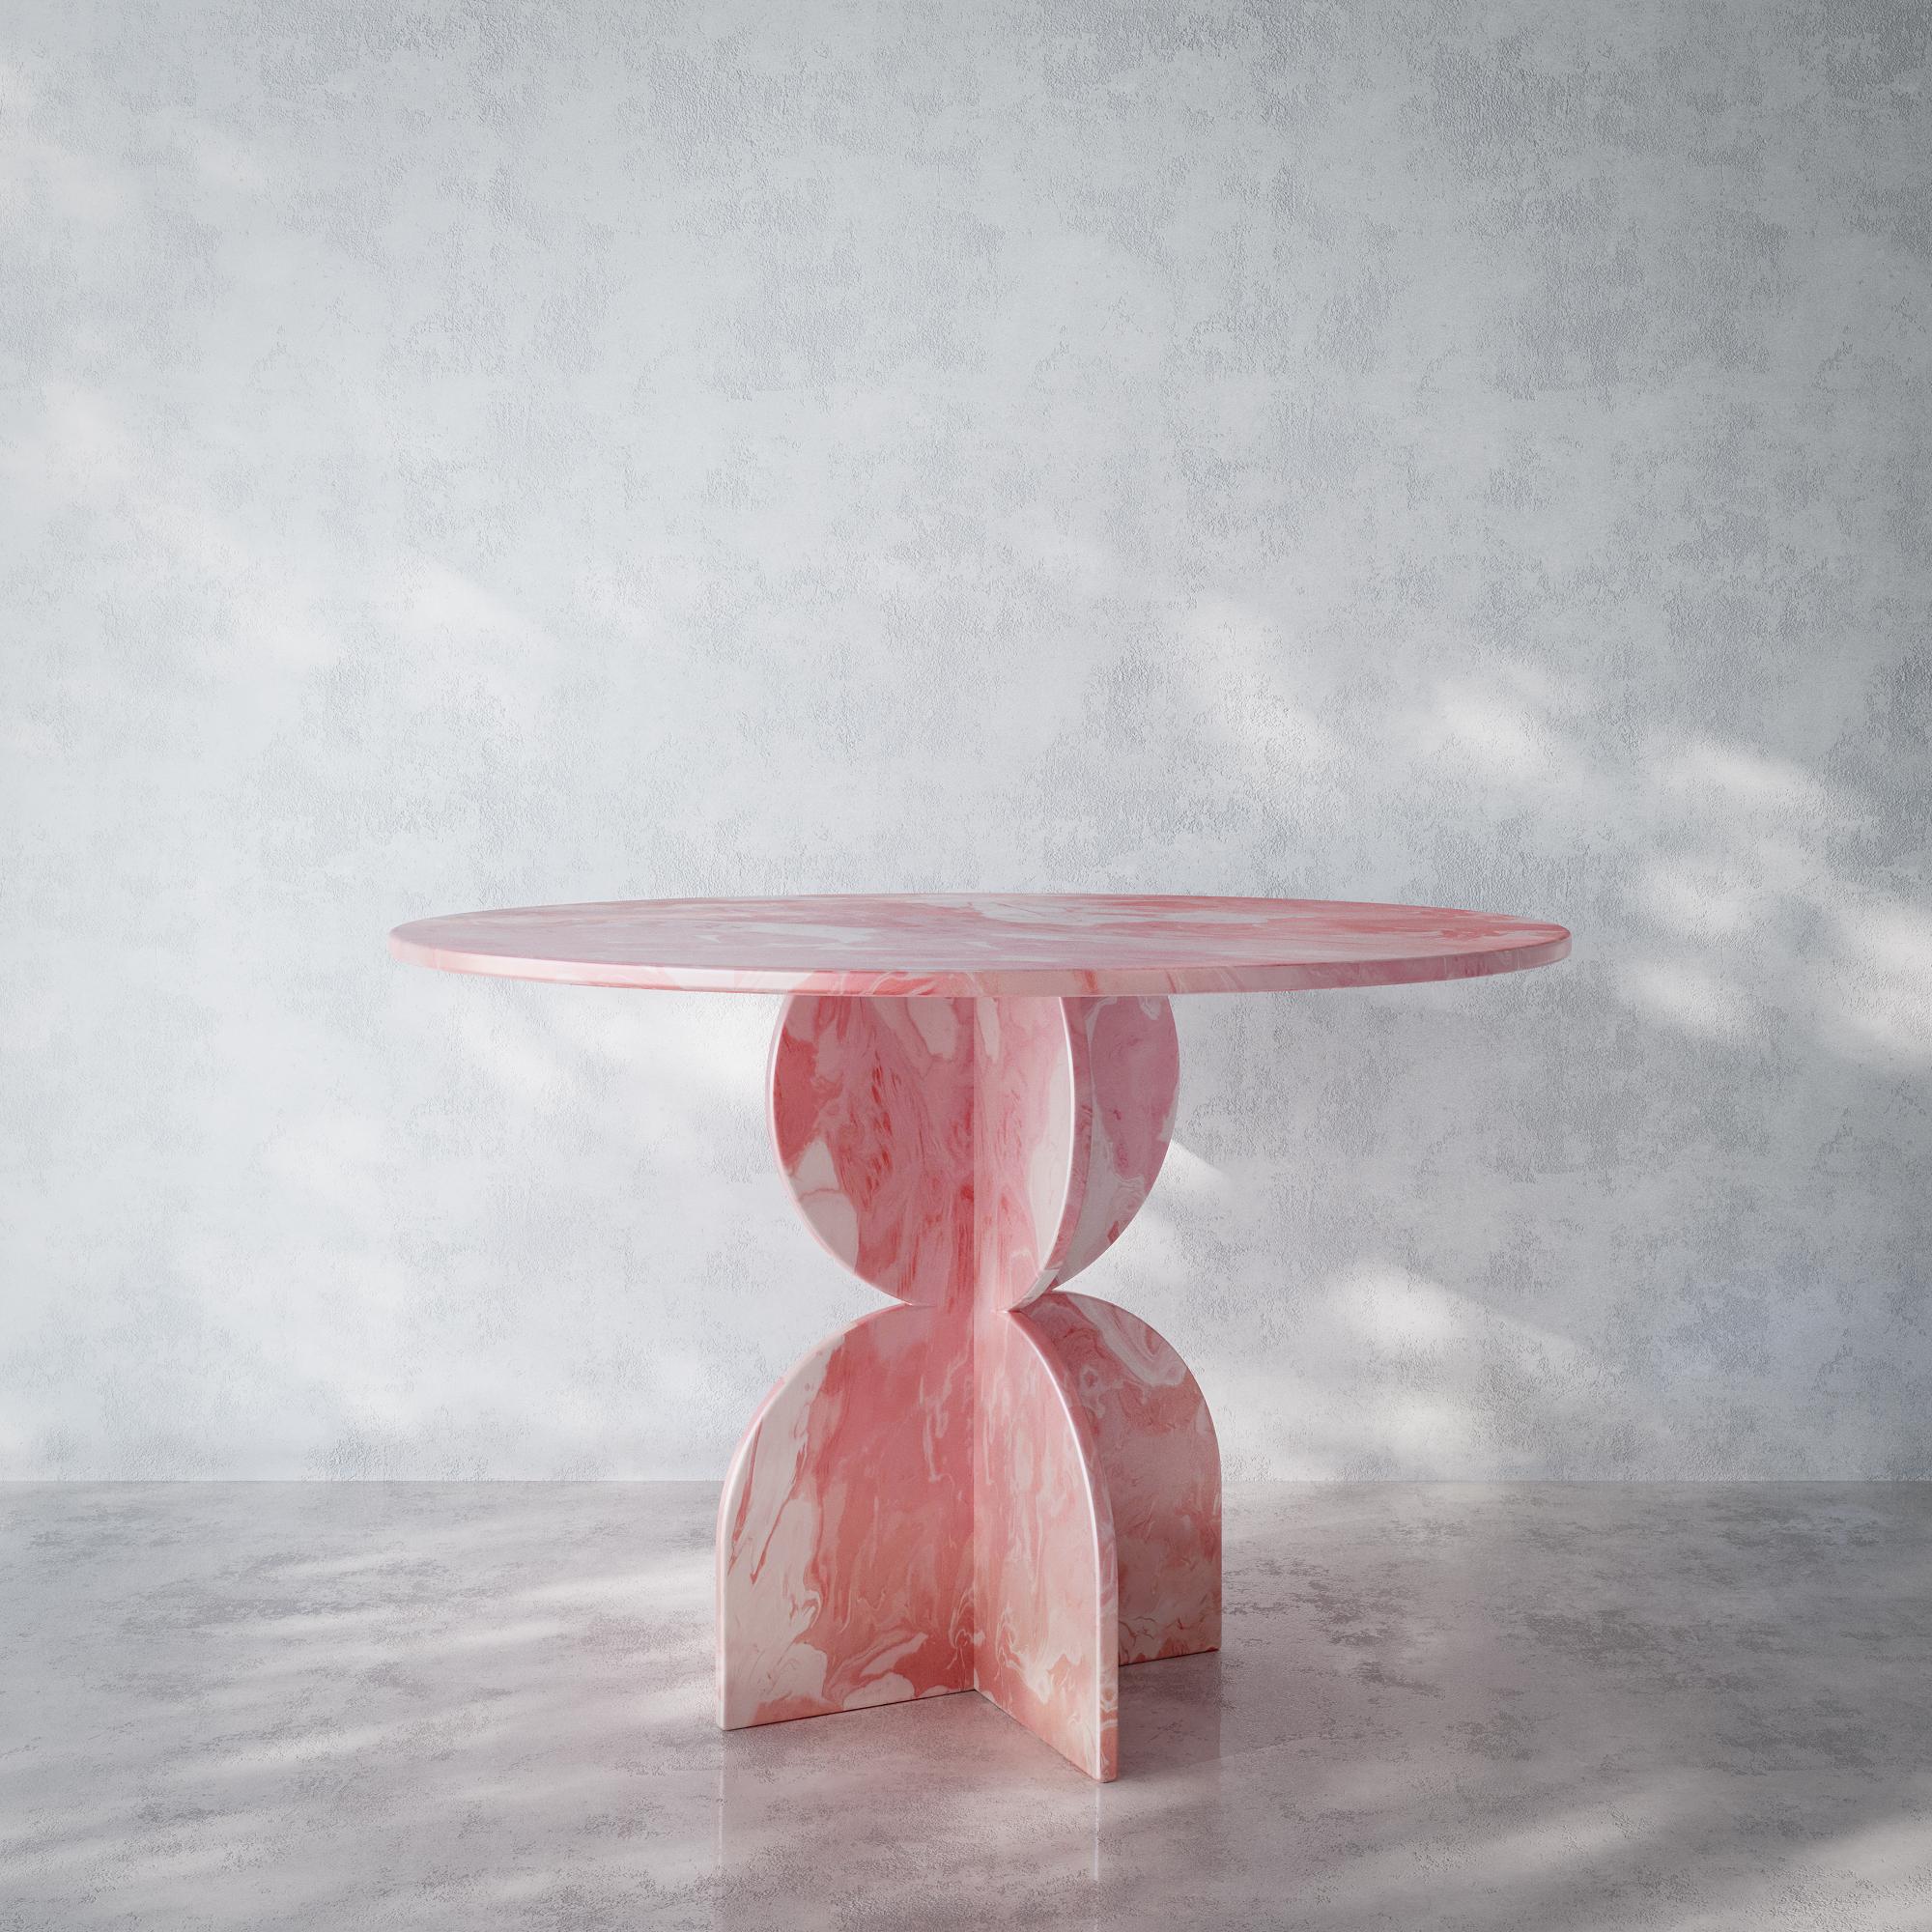 Table ronde rose contemporaine fabriquée à la main en plastique 100% recyclé par Anqa Studios.
Des conversations incroyables ont lieu autour de tables incroyables. La table ronde ANQA Studios est une table de forme géométrique dont le design